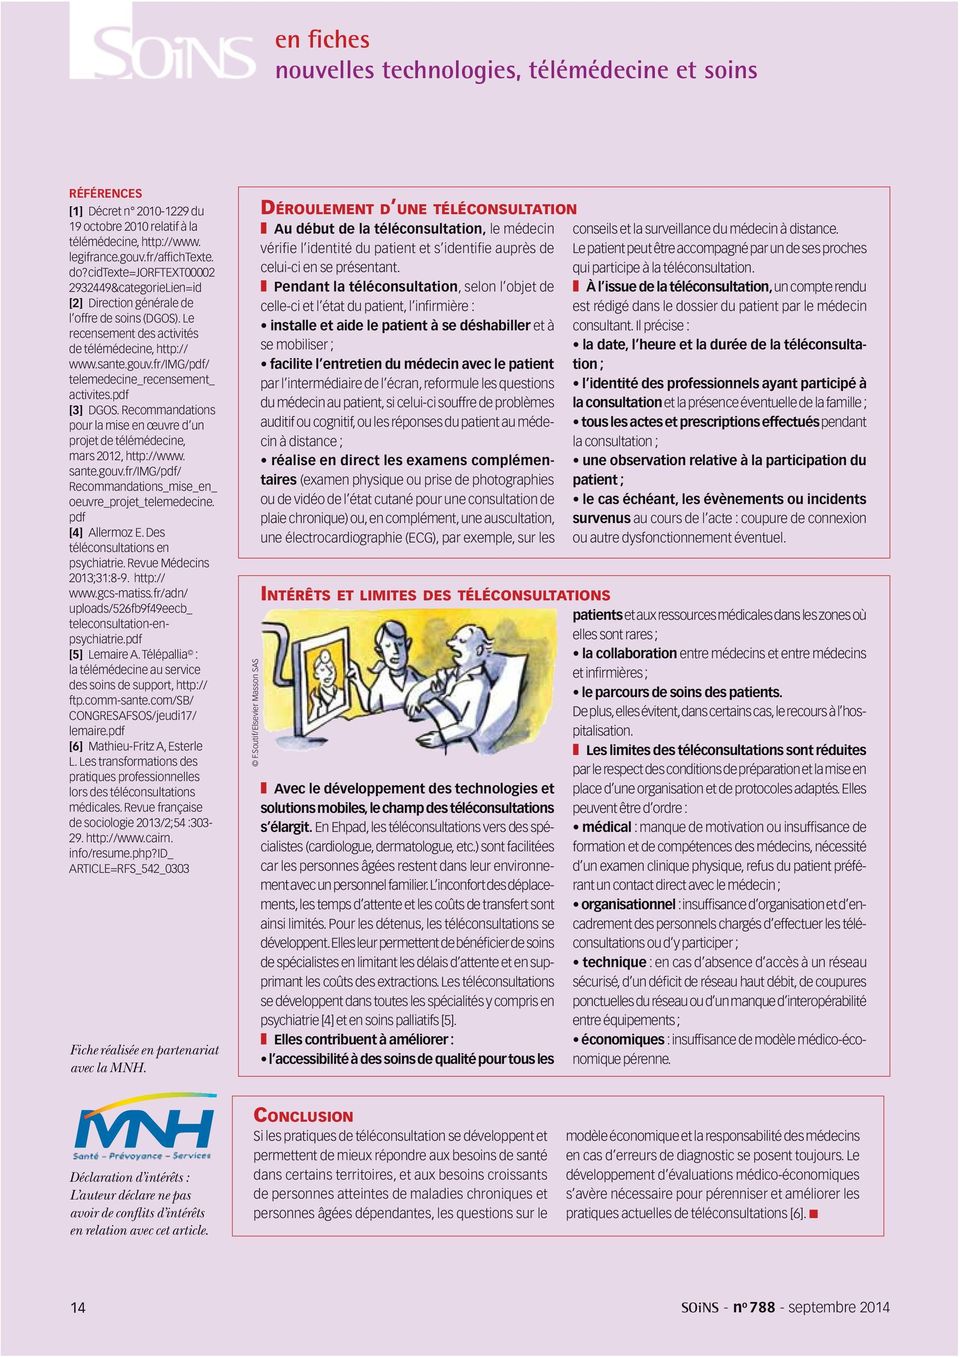 fr/img/pdf/ telemedecine_recensement_ activites.pdf [3] DGOS. Recommandations pour la mise en œuvre d un projet de télémédecine, mars 2012, http://www. sante.gouv.